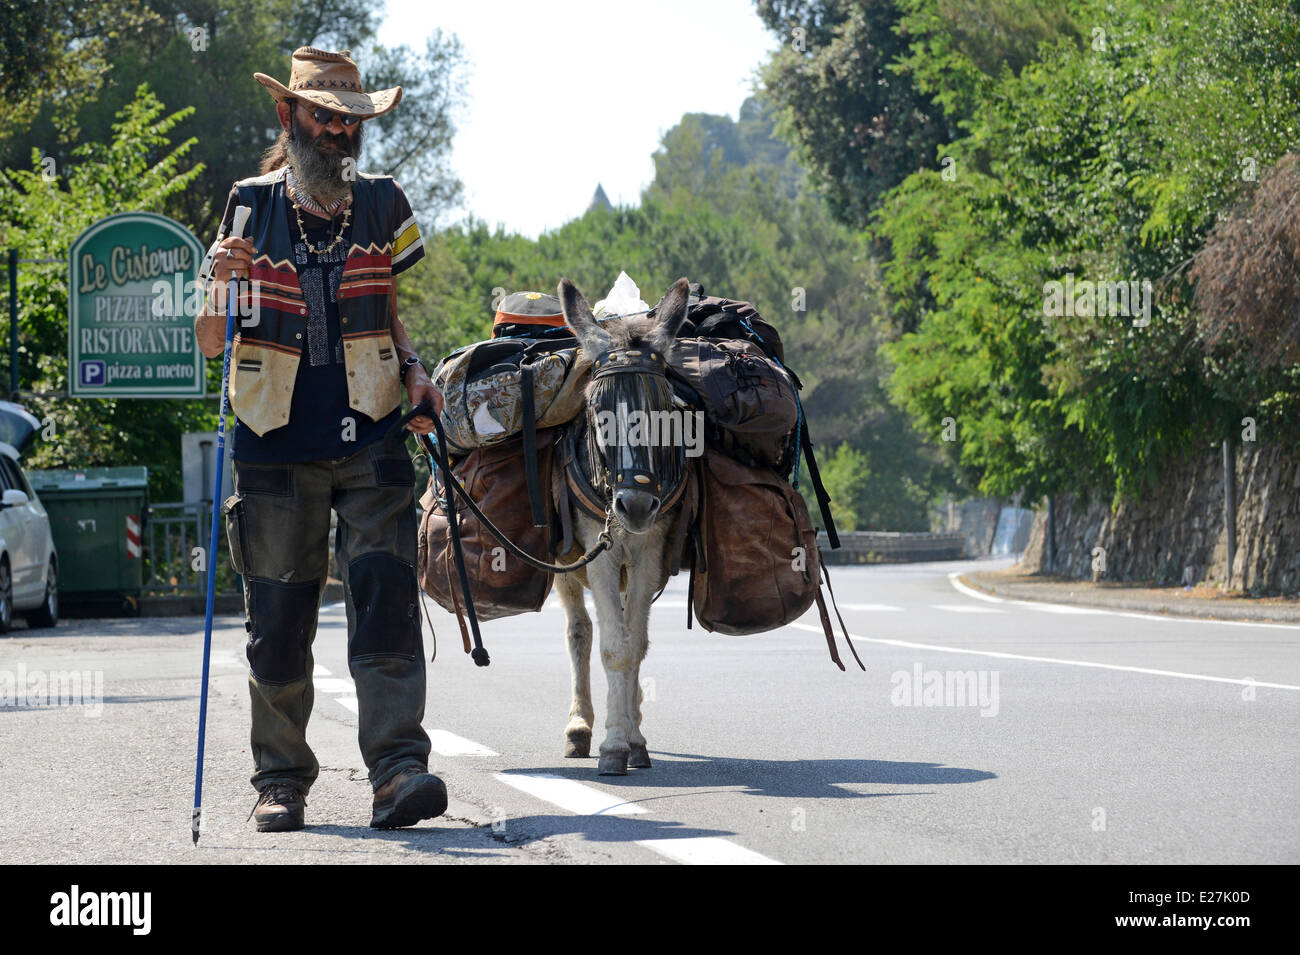 Homme voyageant avec un âne près de Chiavari Italie en route pour Strasbourg / ânes vieille mule homme animal voyage hippie Banque D'Images